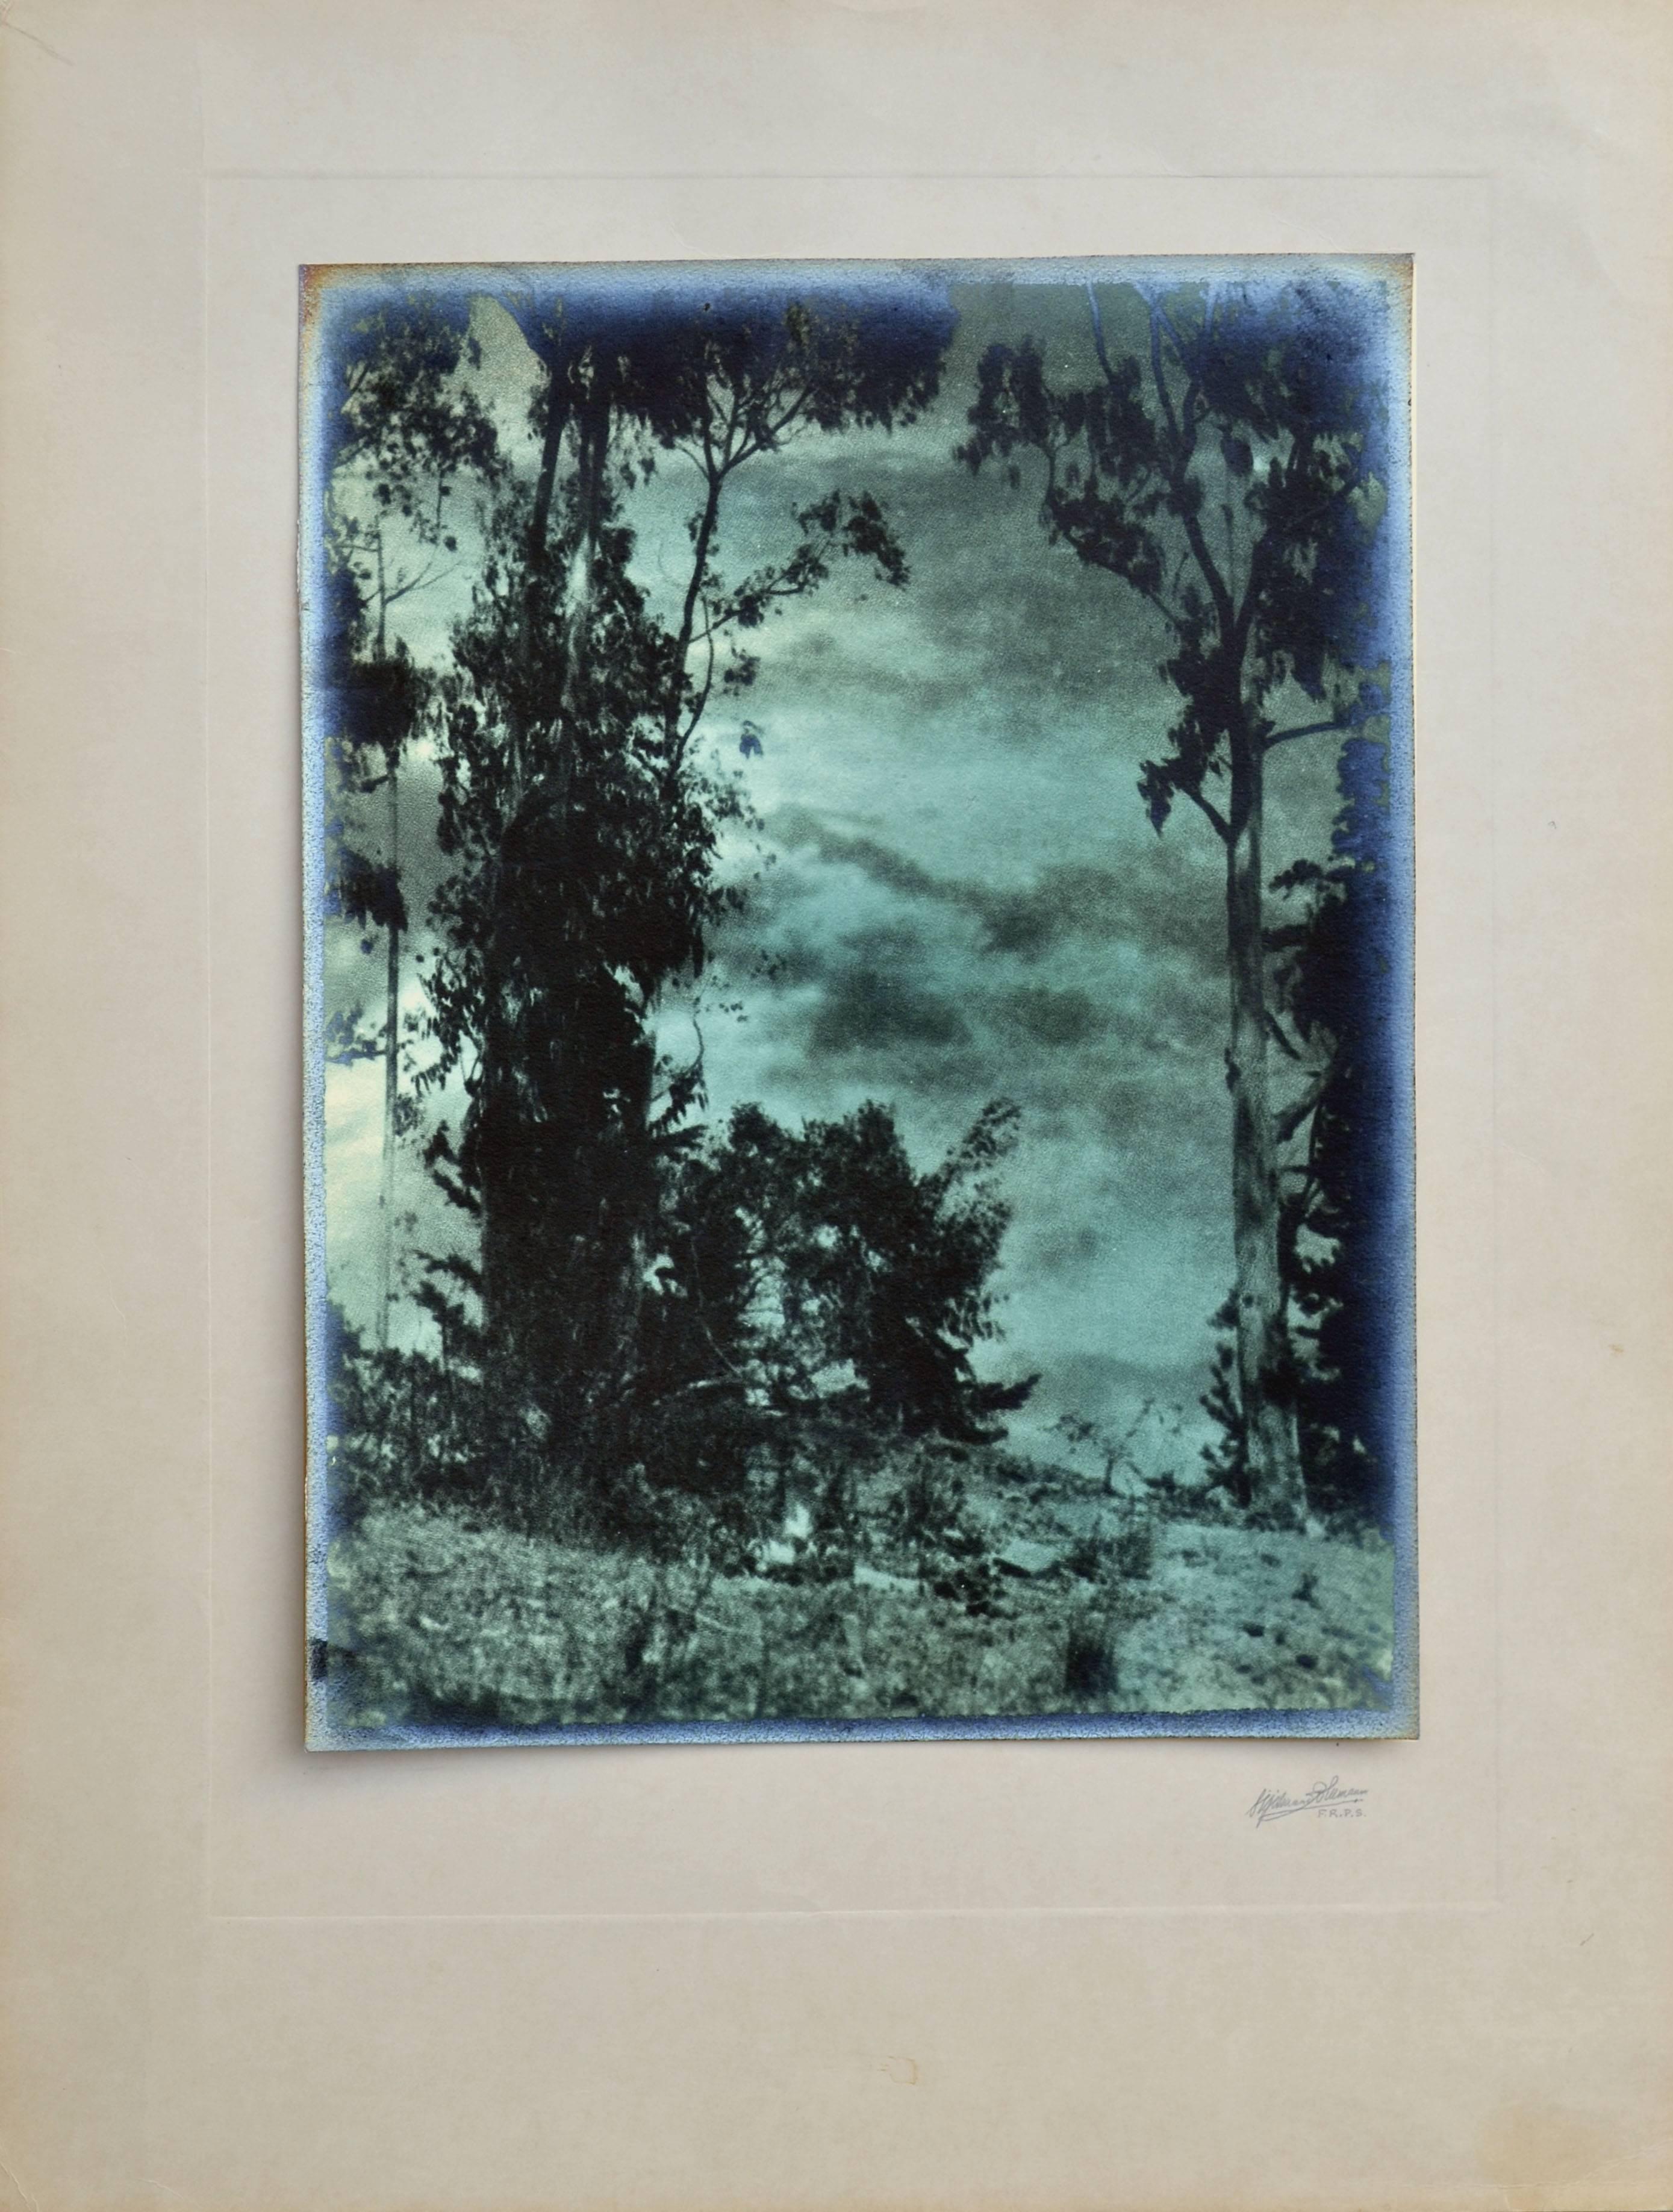 Paysage photographique du début du XXe siècle - Vue à travers le ciel